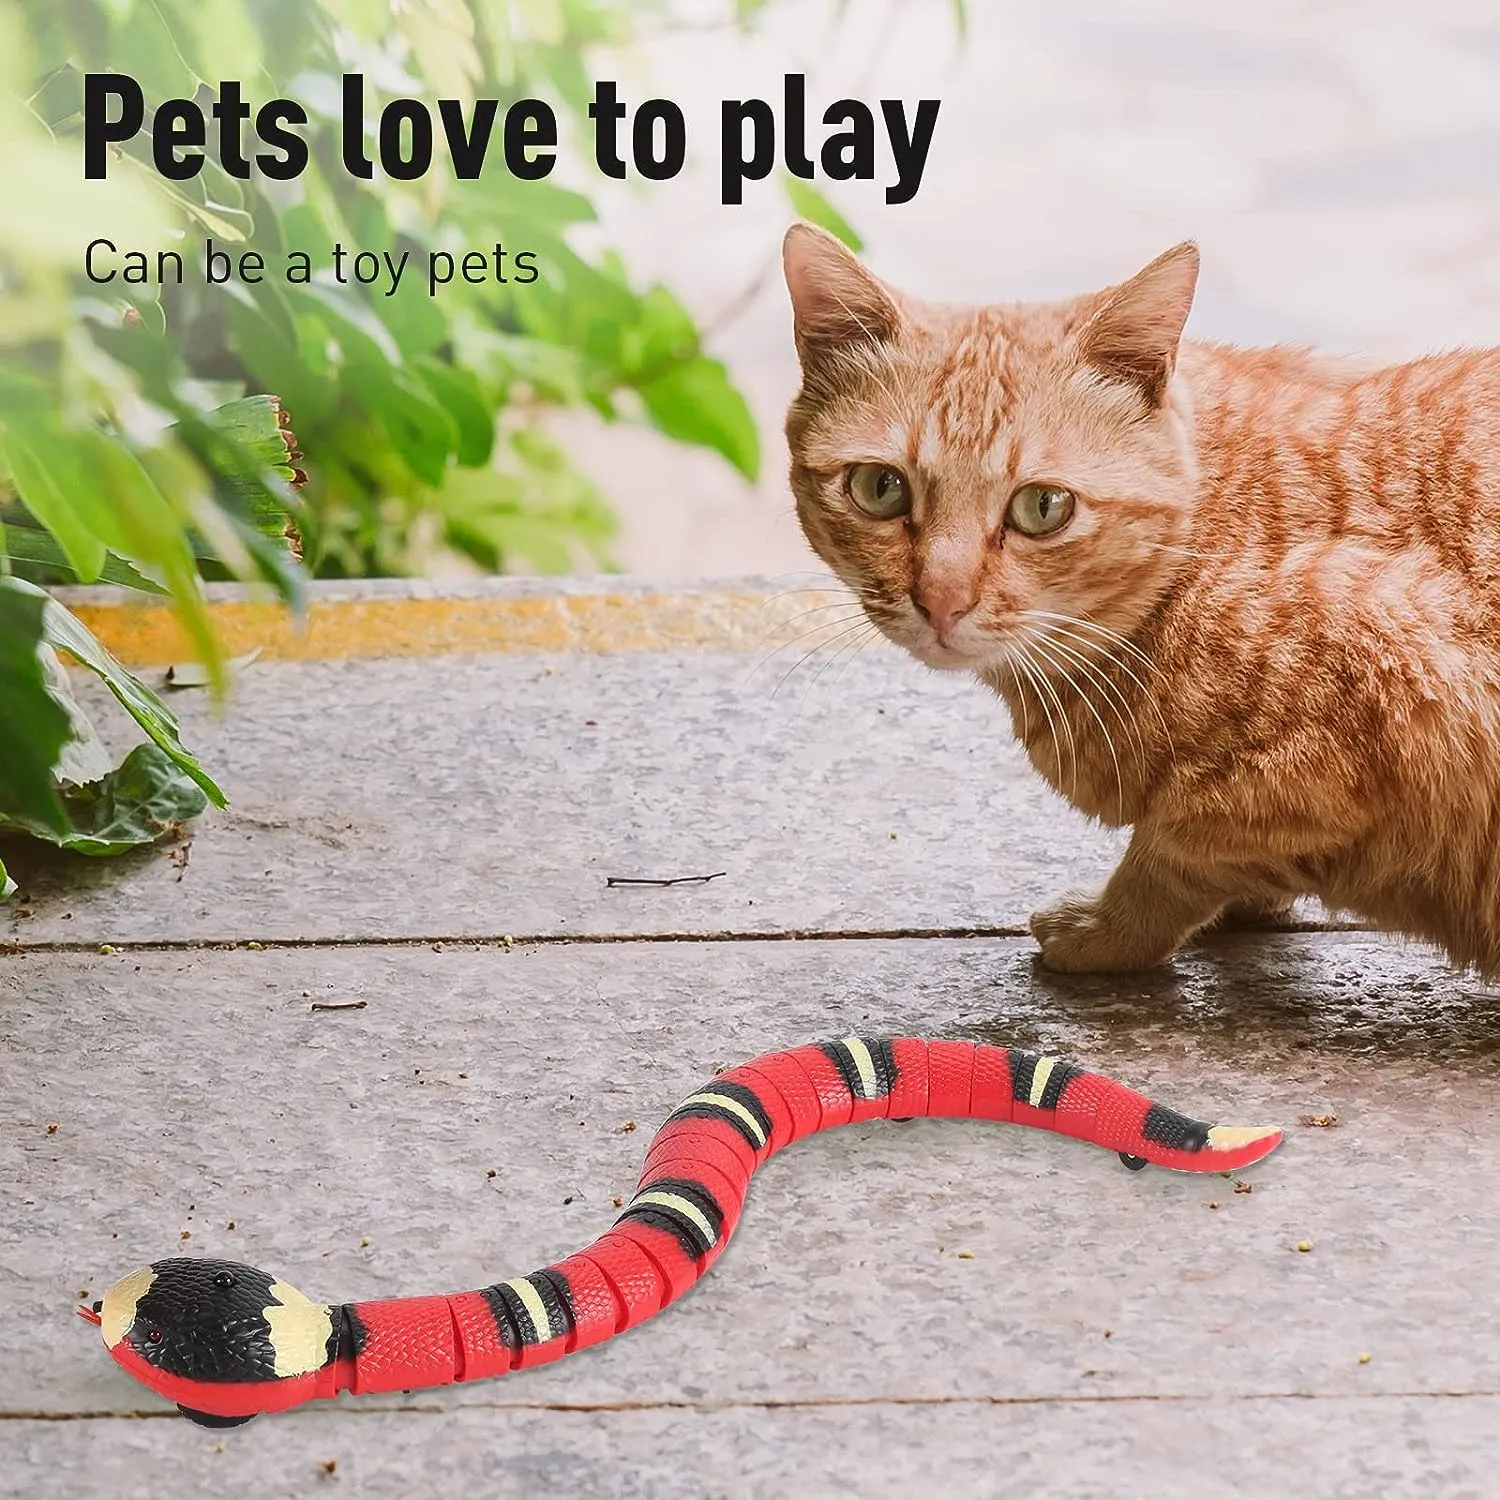 Brinquedo interativo de cobra com controle remoto Simulação realista Brinquedos de detecção inteligente detectam obstáculos automaticamente e escapam em movimento elétrico complicado para cães e gatos internos